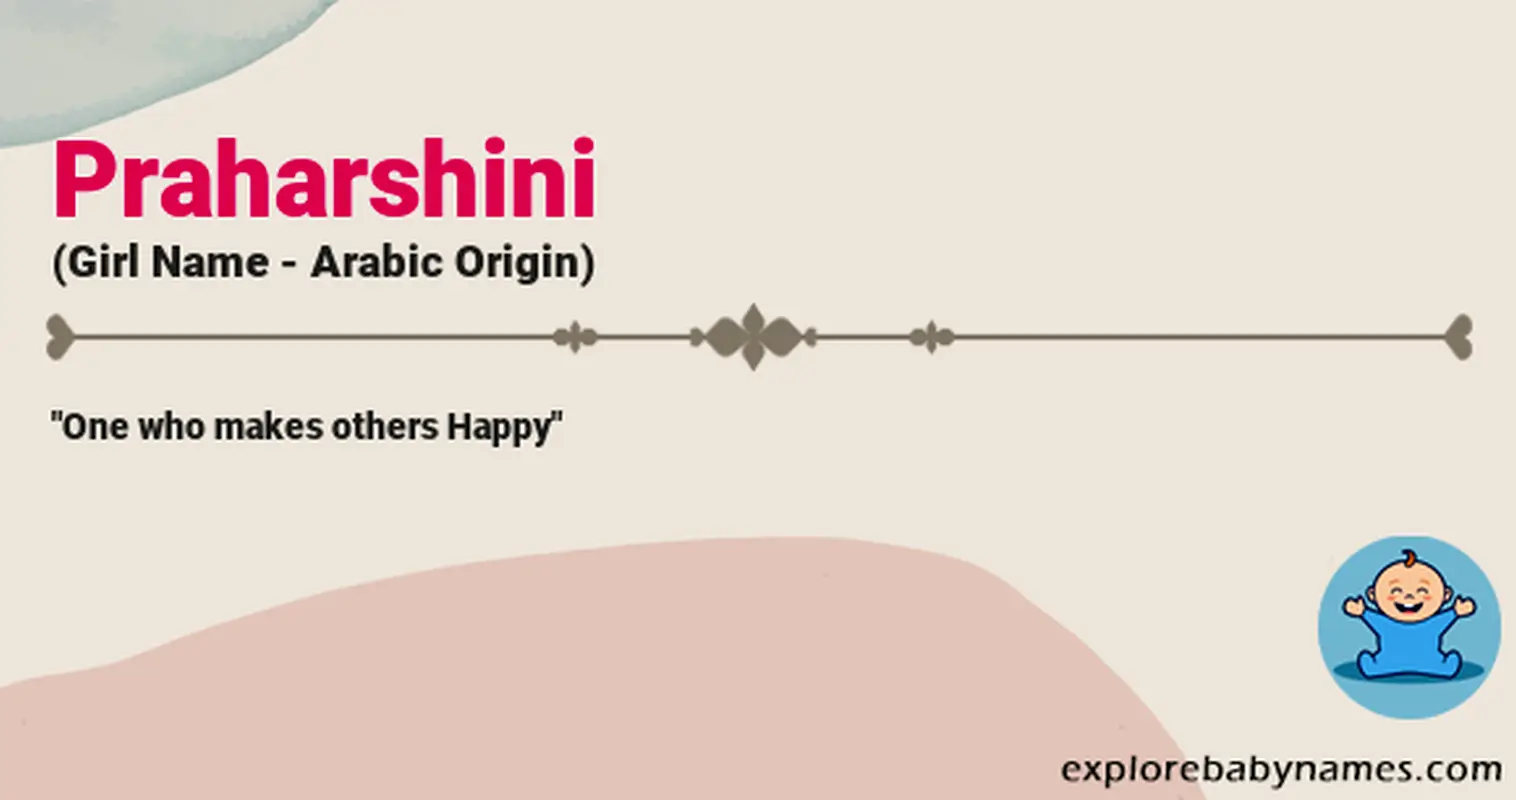 Meaning of Praharshini